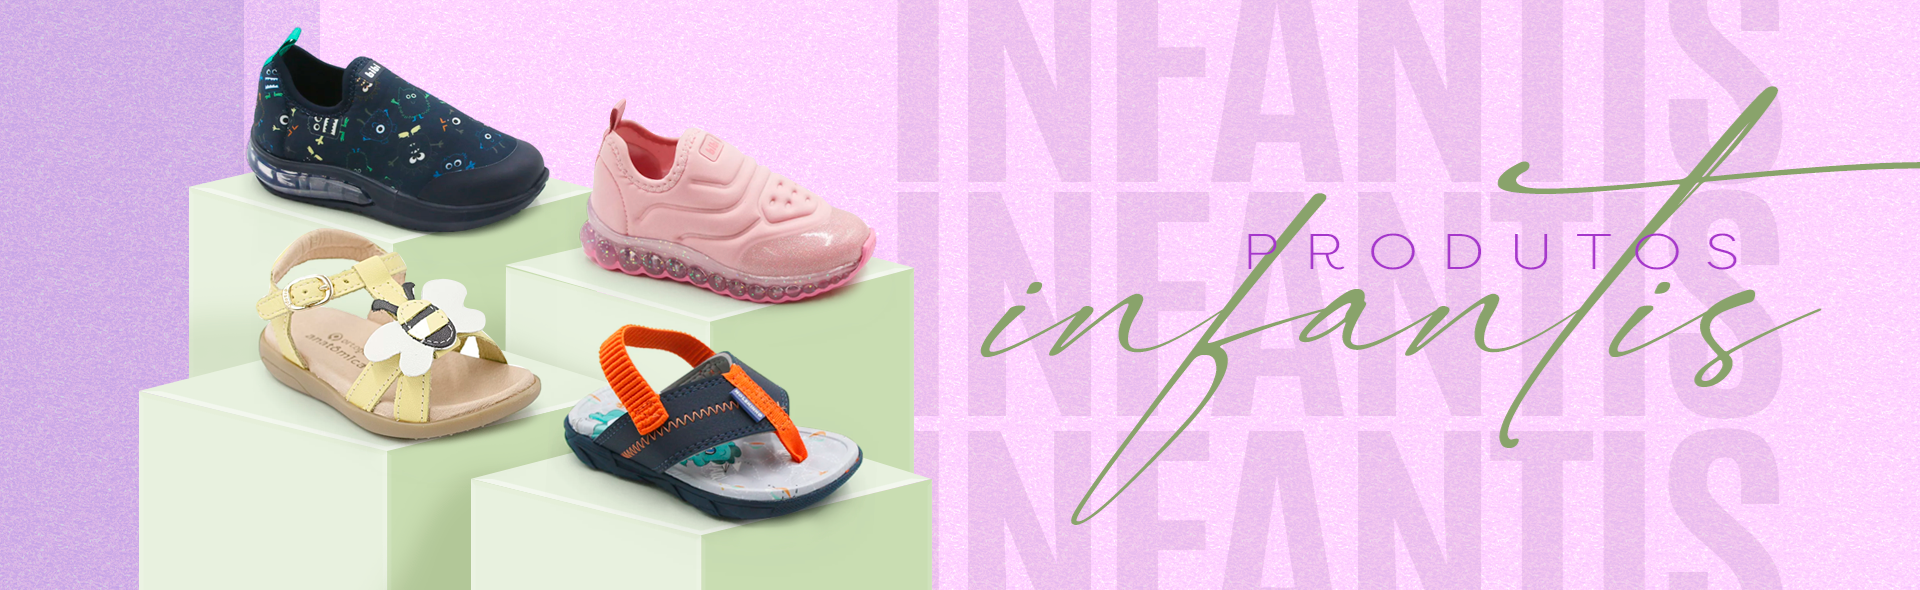 Anita Shoes - Calçados e Acessórios - Calçados Infantis - Calçados bebê, infantil, menino, menina. Diversas marcas, cores e modelos.